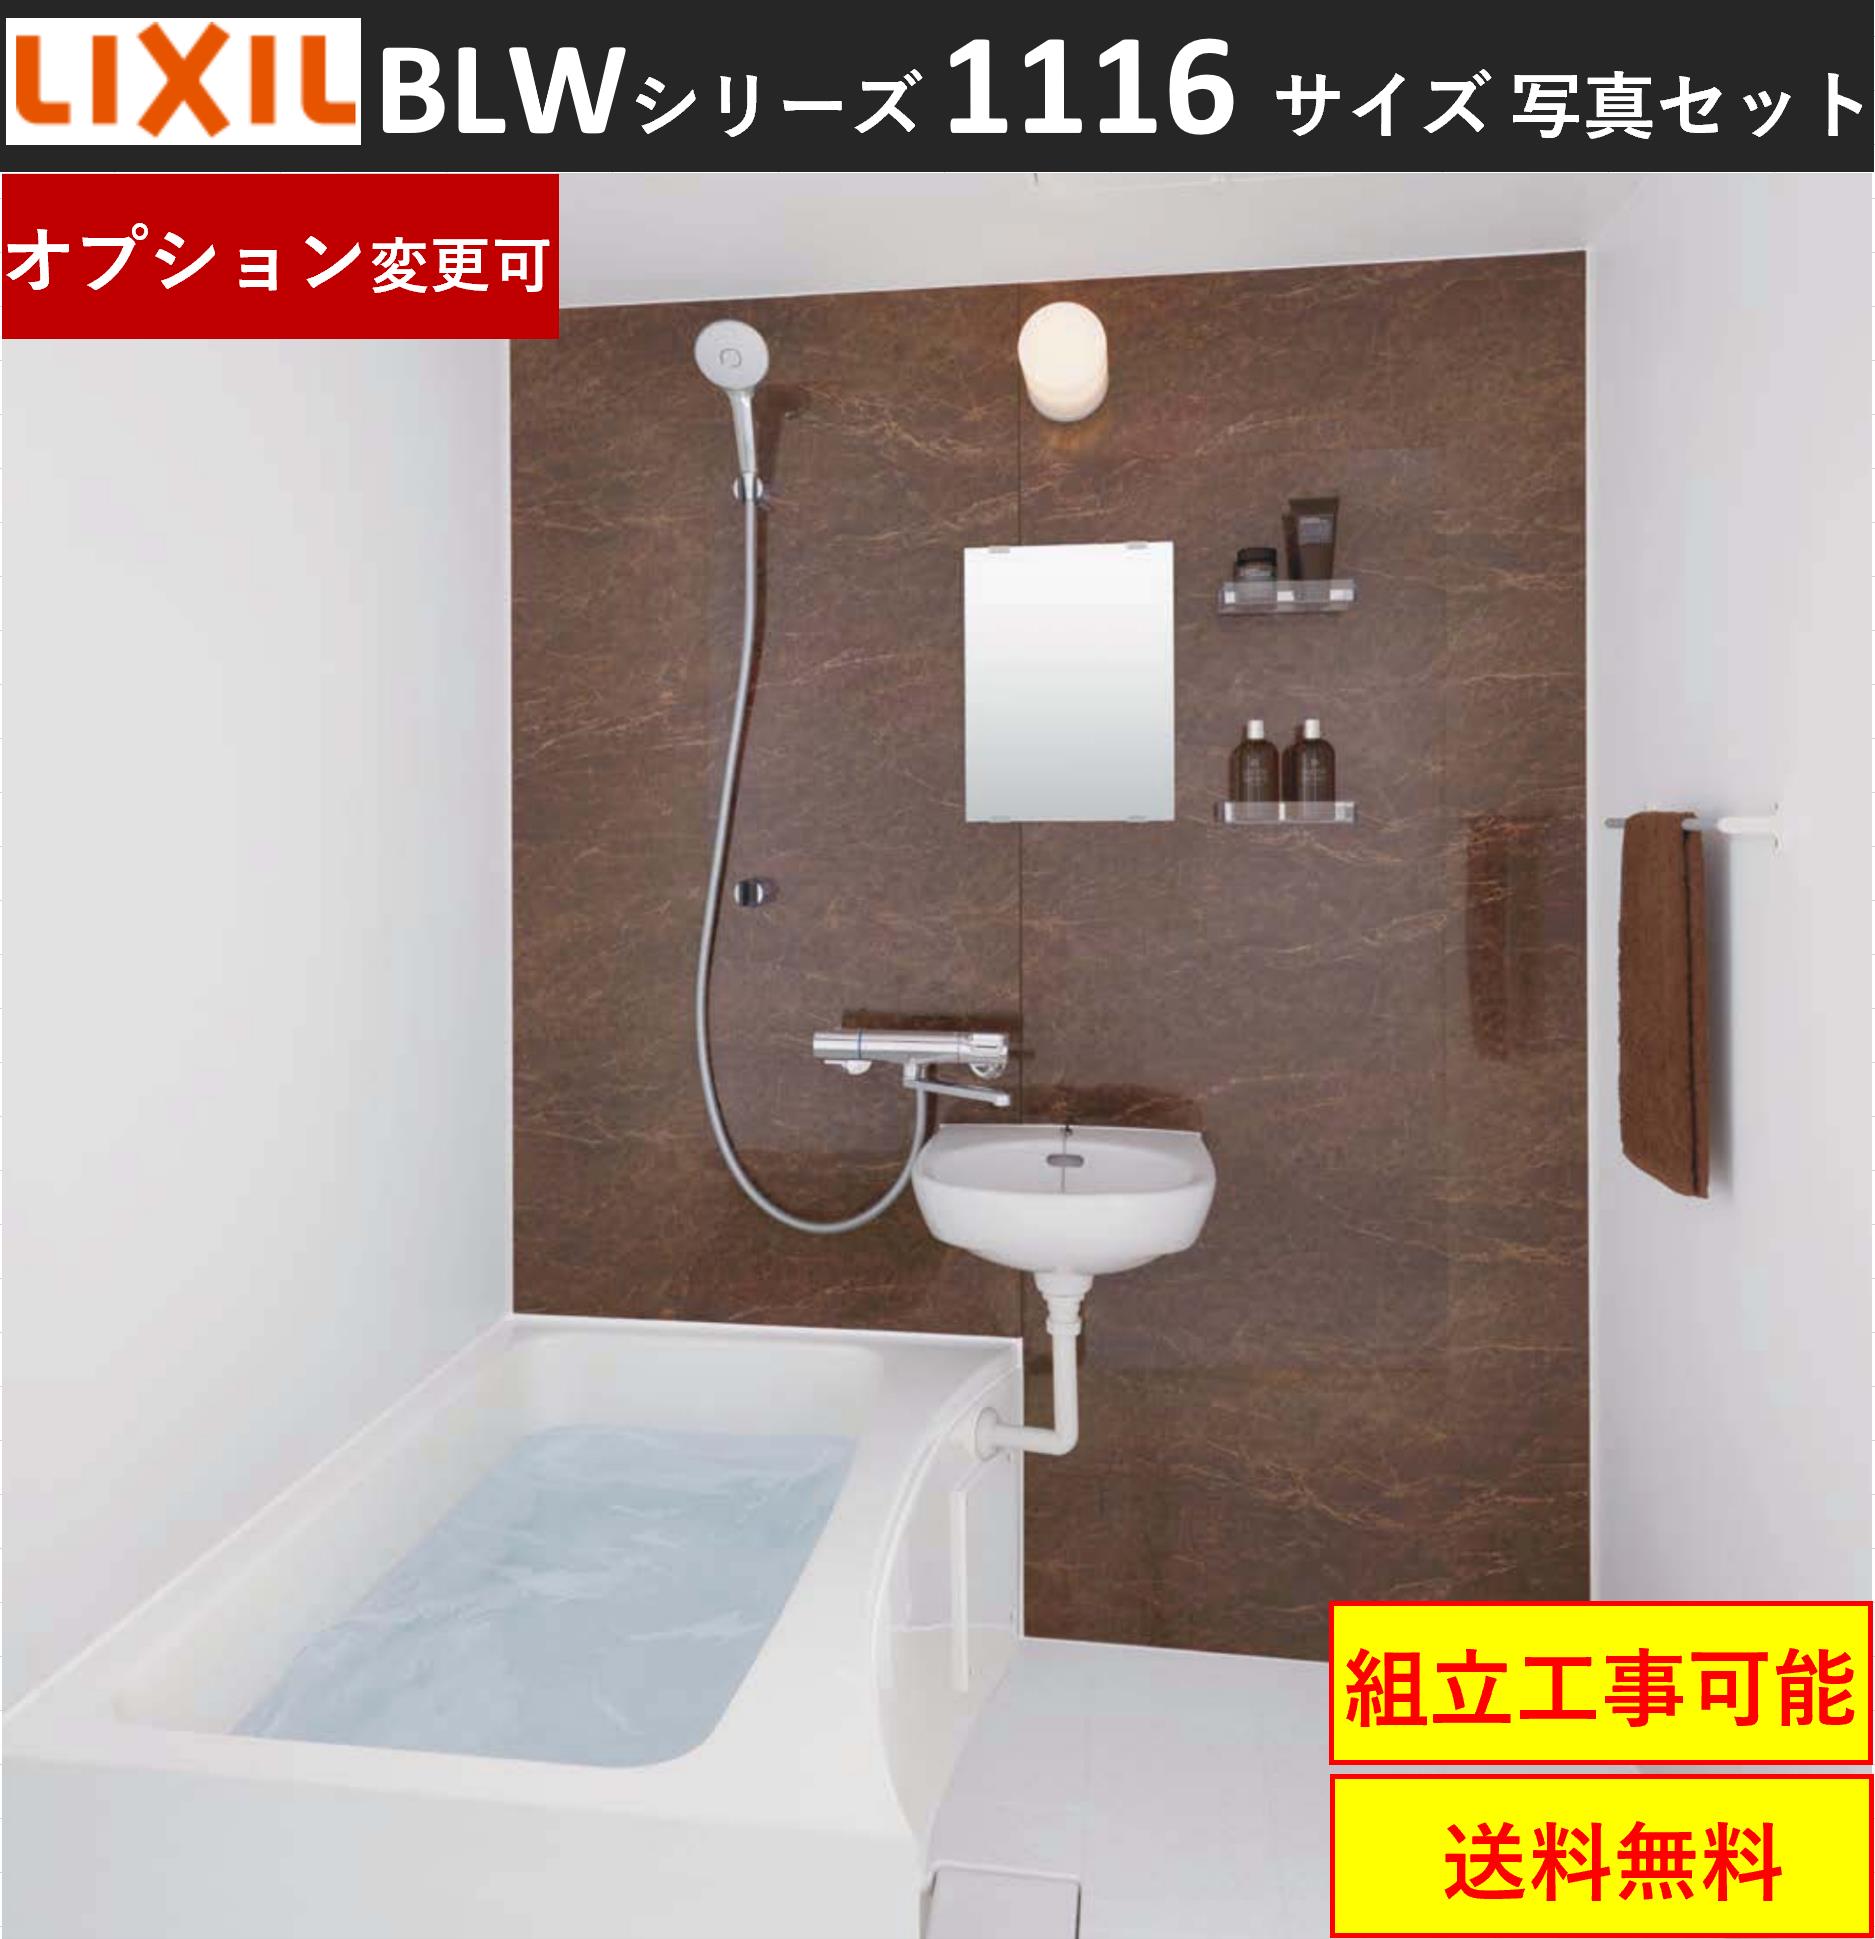 日本最大級 ☆LIXILホテル向け洗面・便器付ユニットバス69%OFF☆BLCW-1116サイズ - ユニットバス - hlt.no